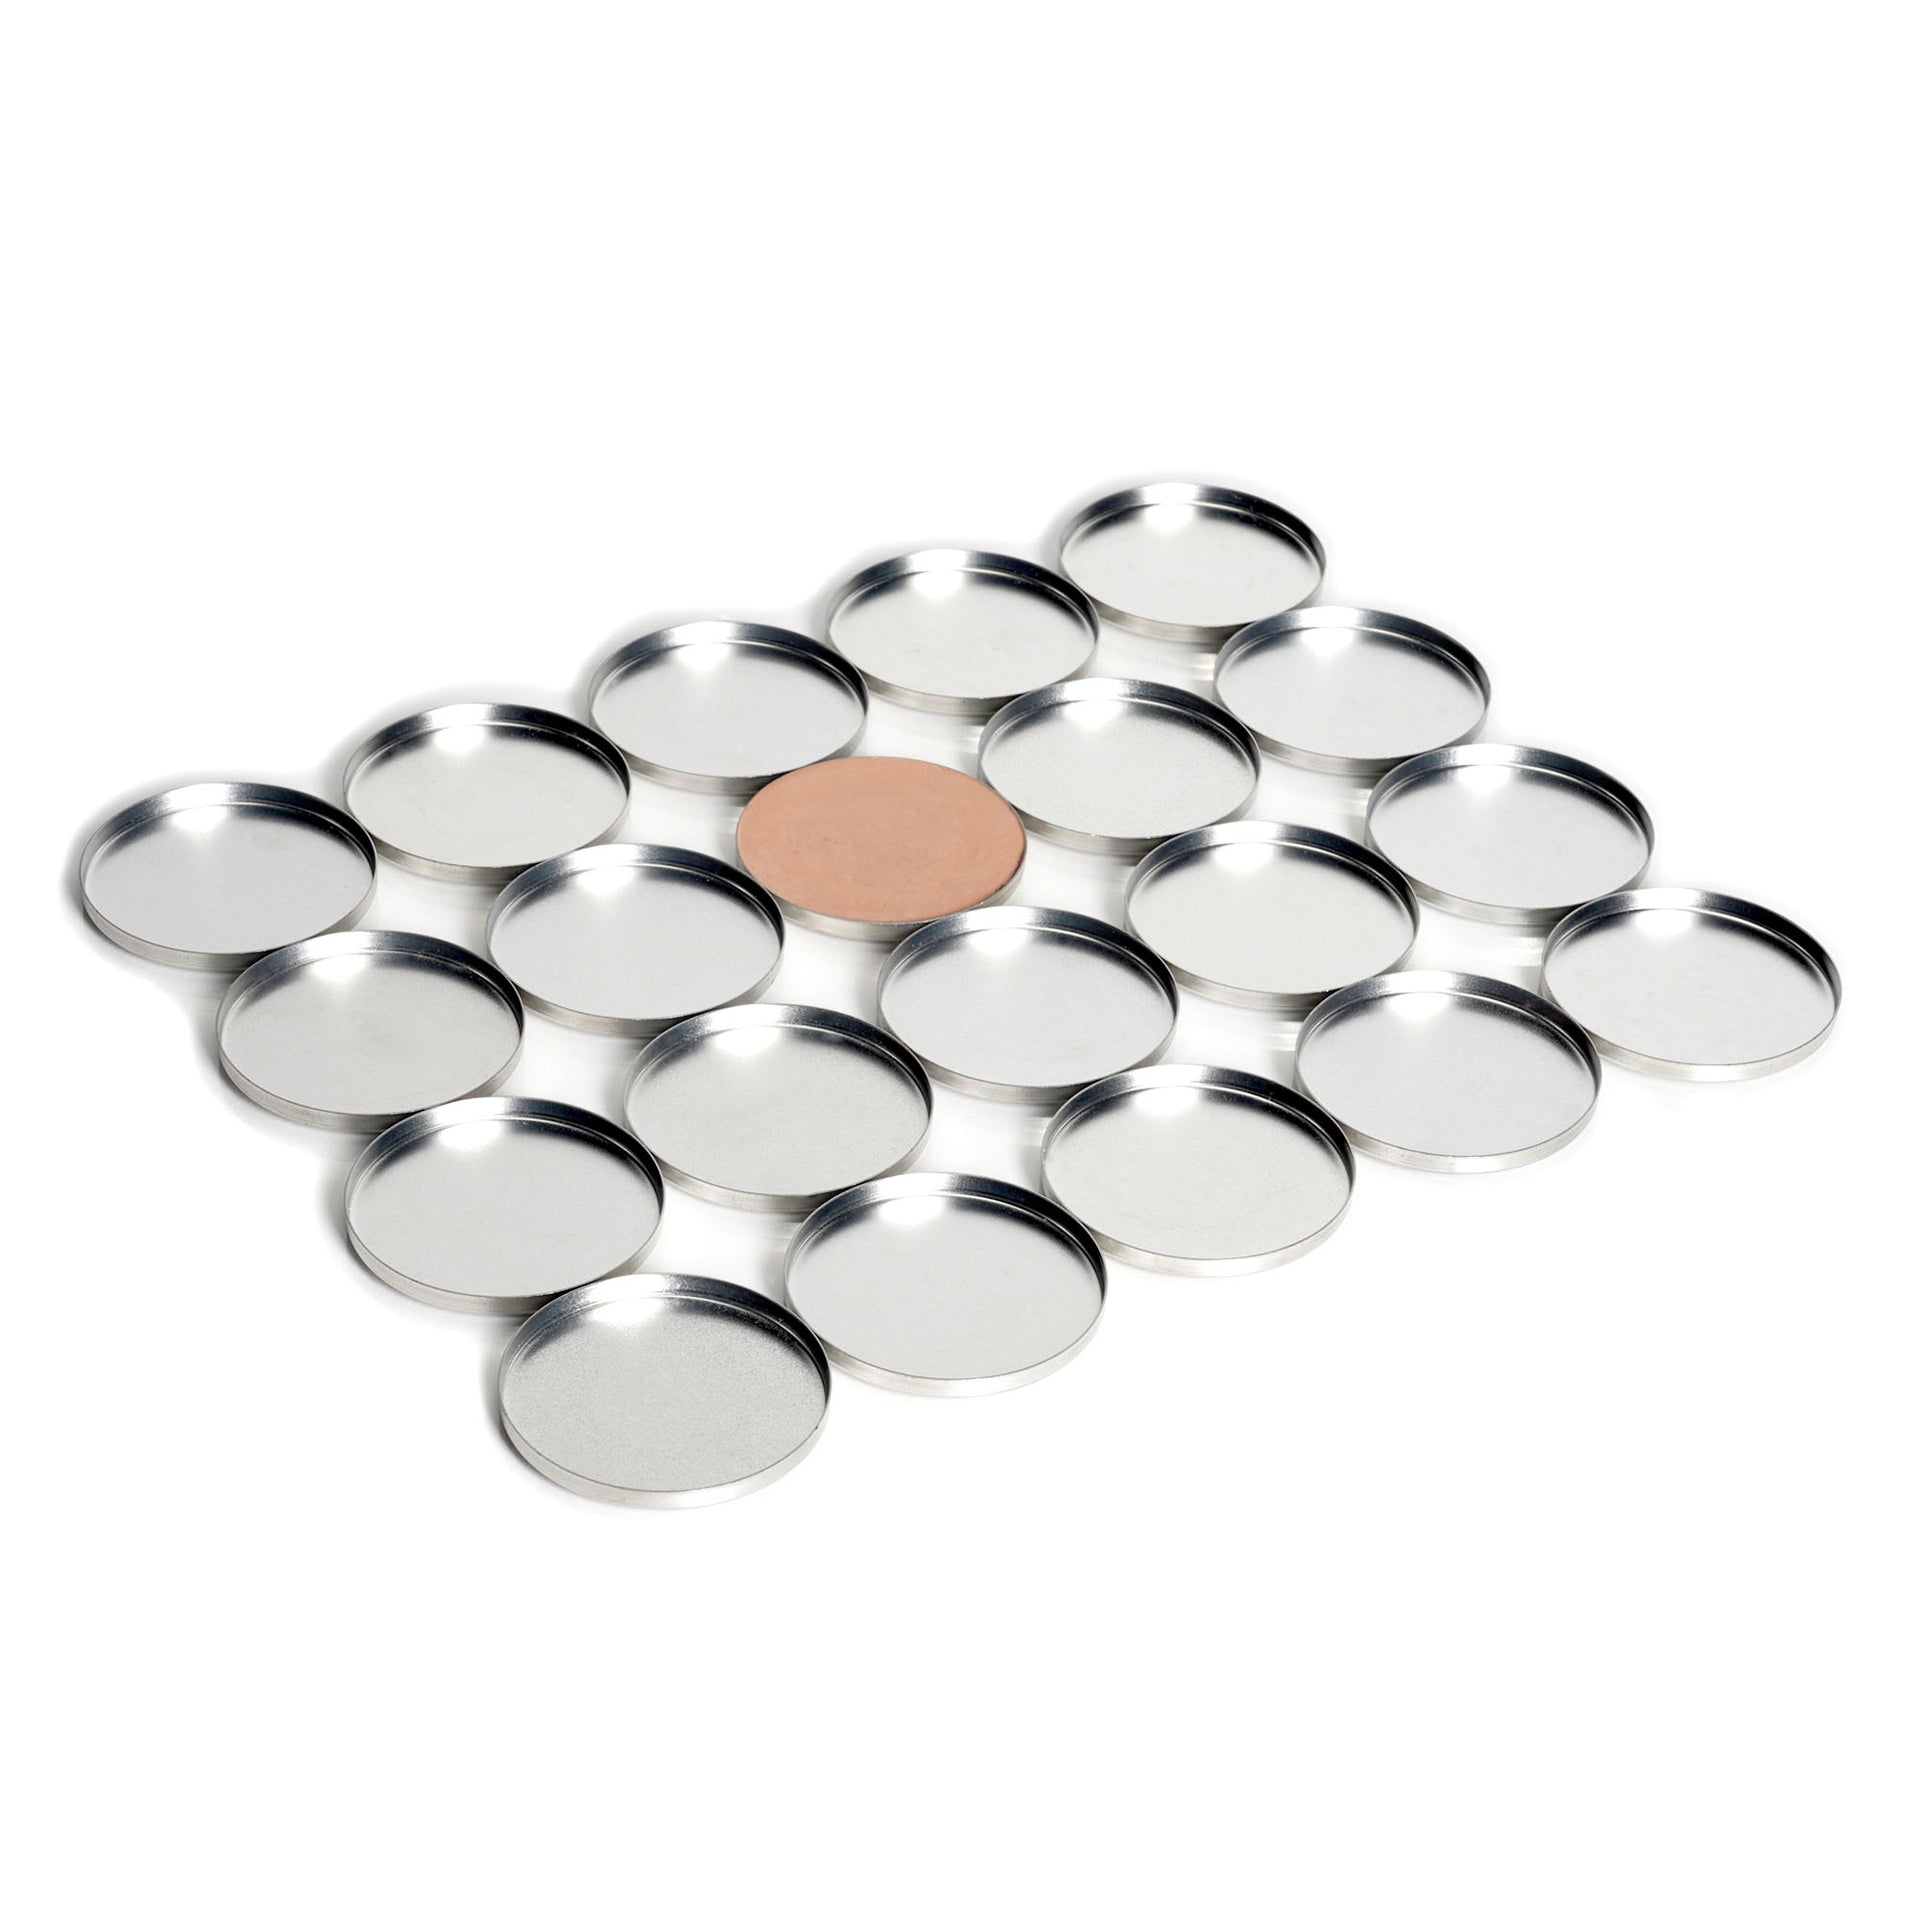 FIXY Medium Magnetic Makeup Pans (37mm) – FIXY Makeup